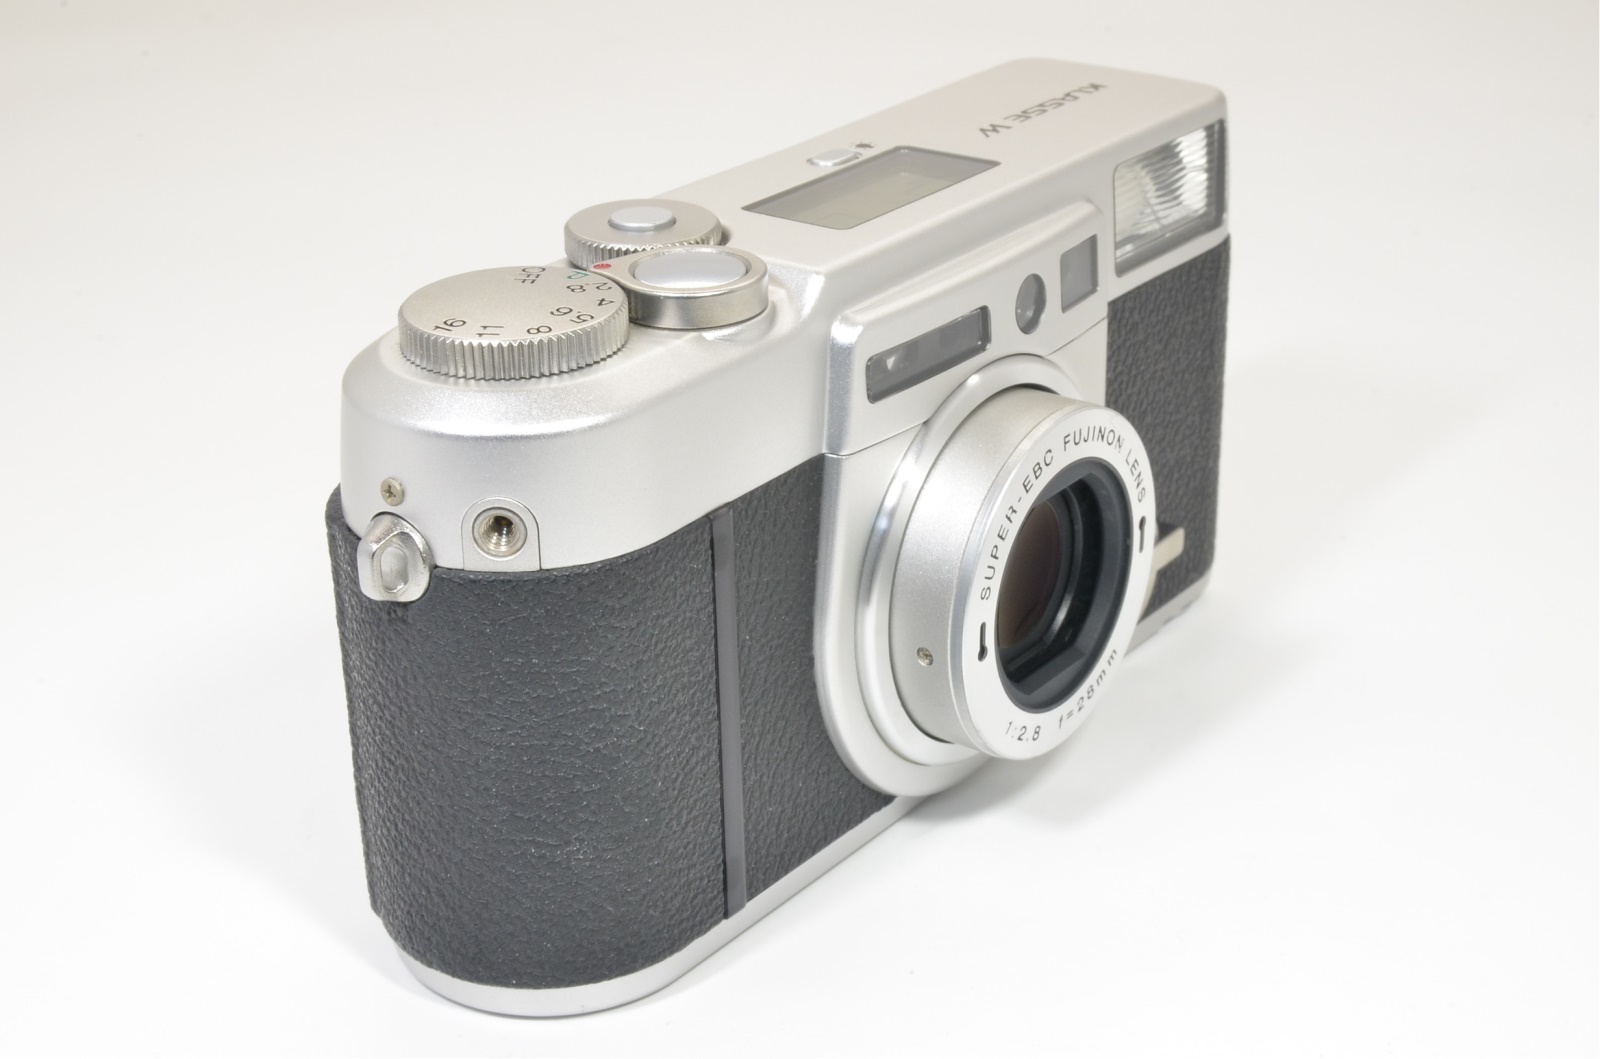 Fuji Fujifilm KLASSE W Silver 28mm f2.8 film camera from Japan 